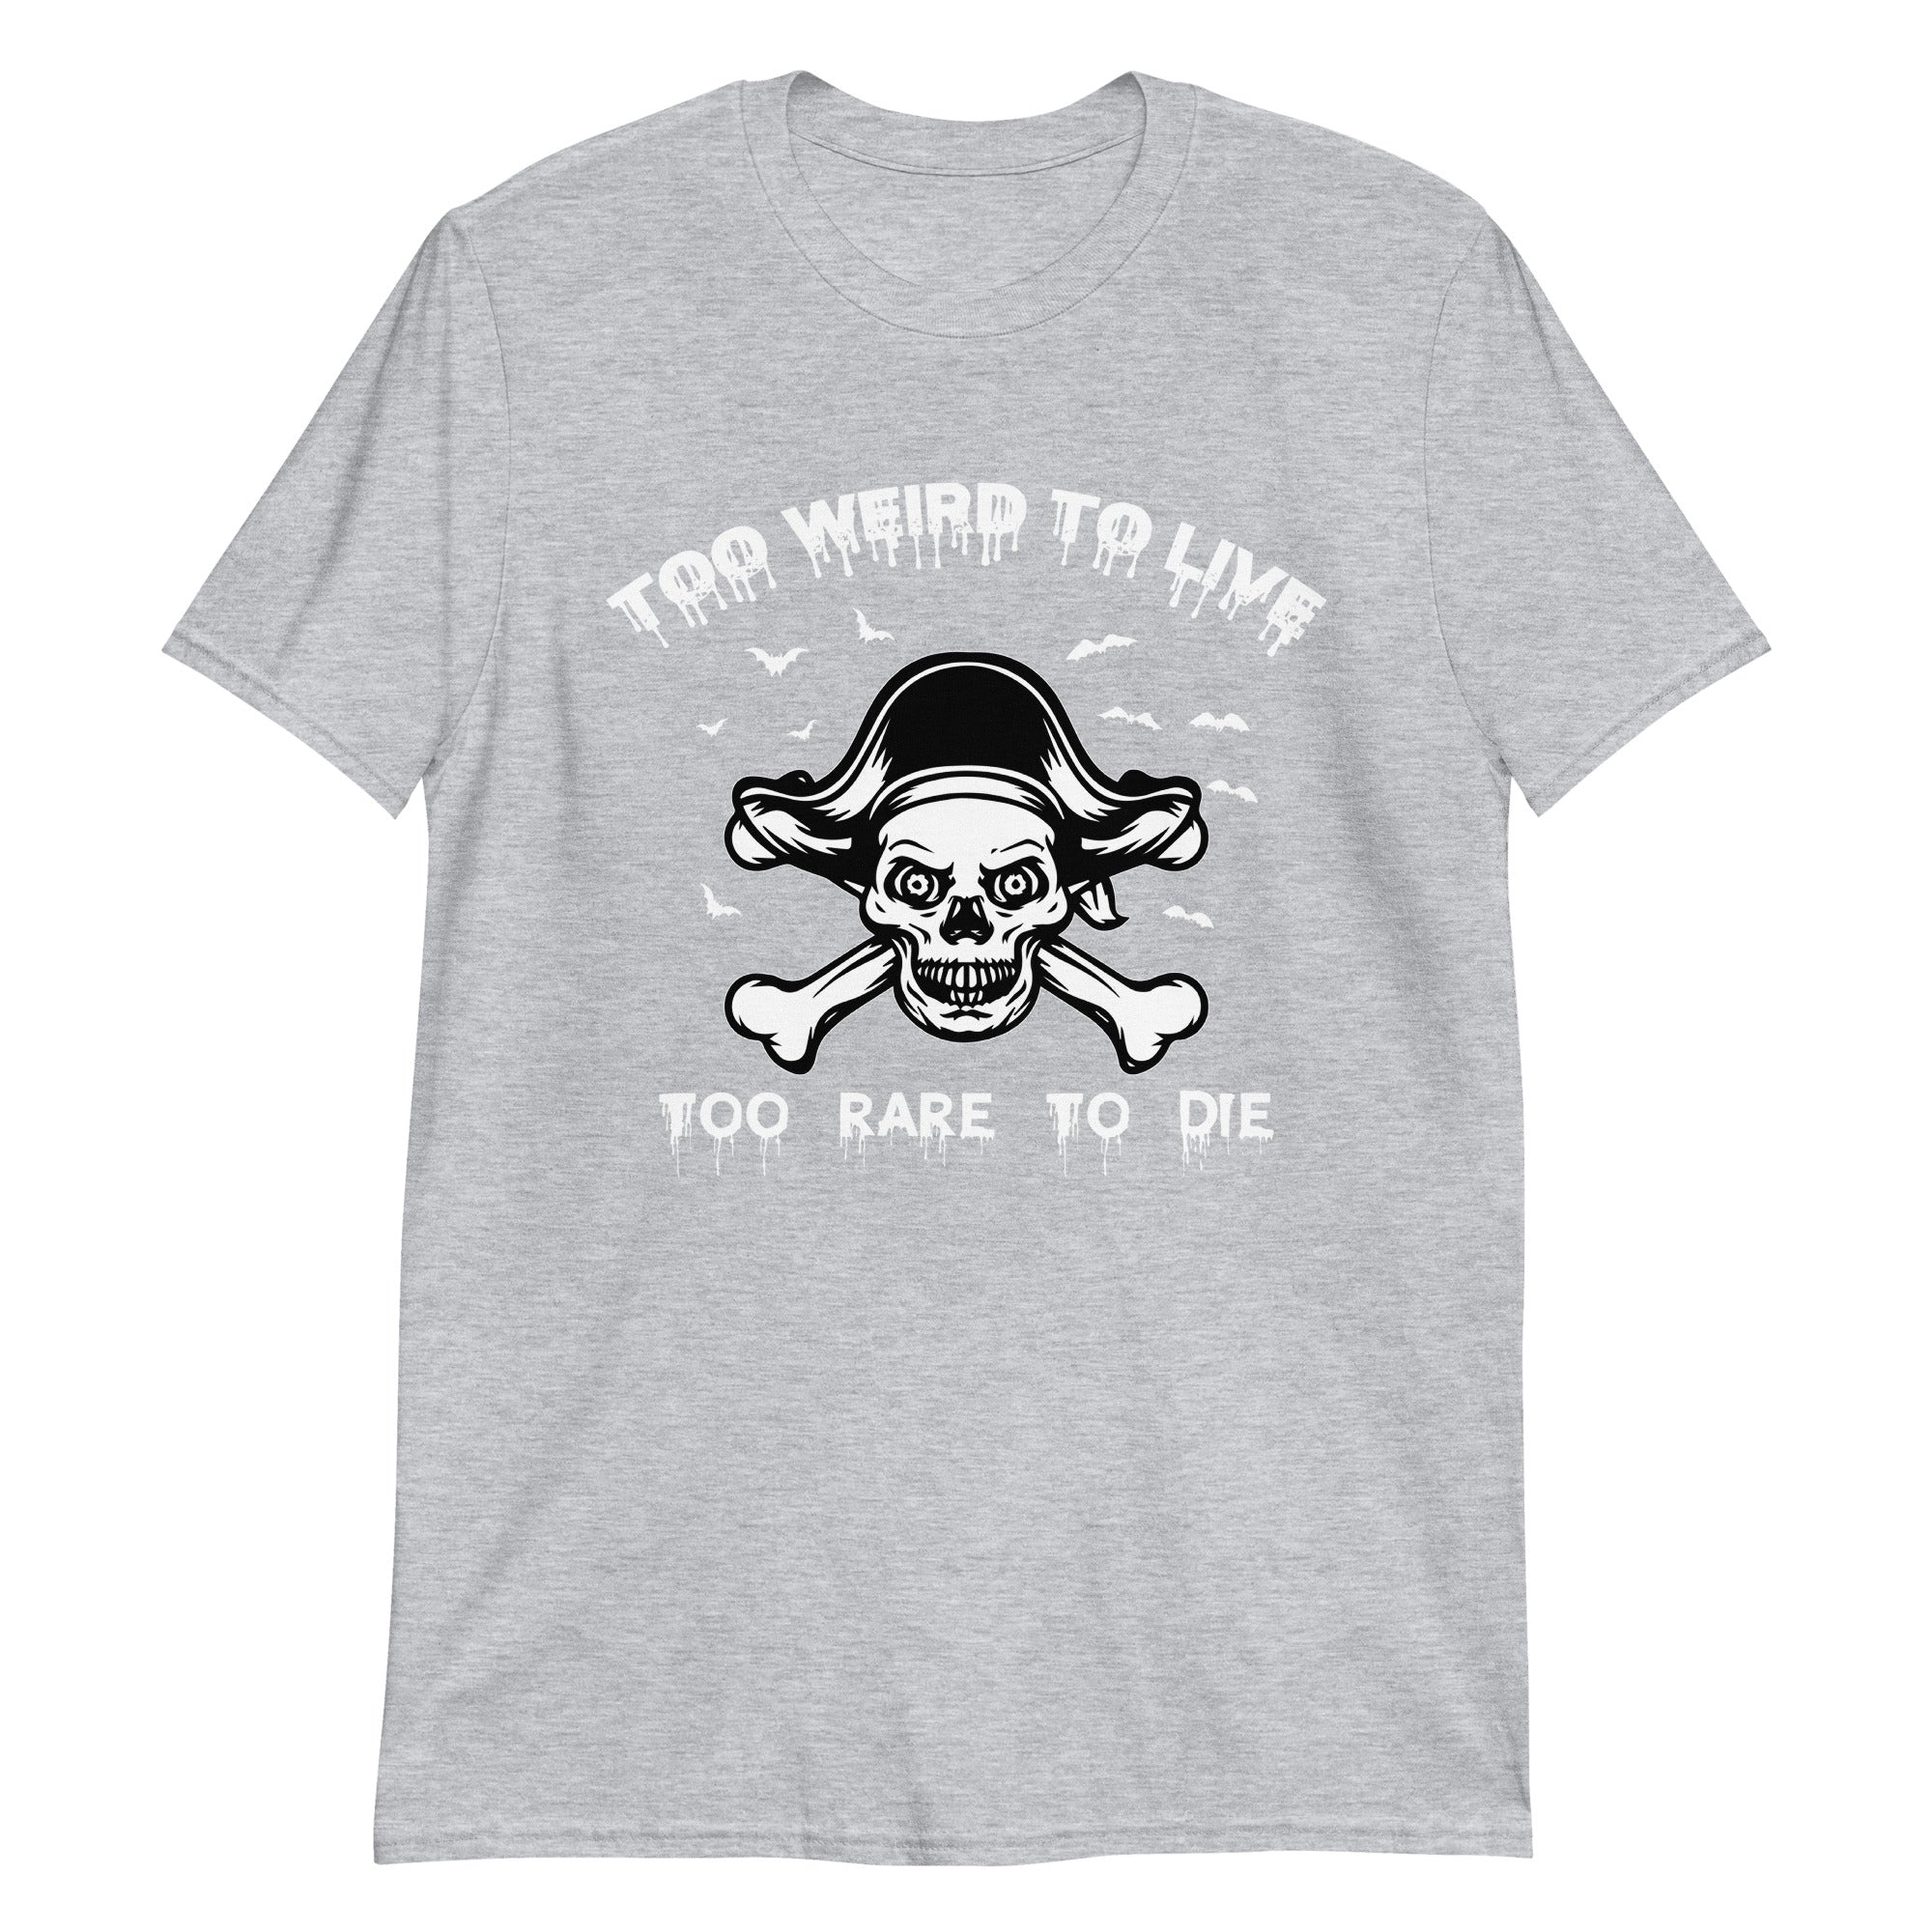 Too Weird Too Rare Unisex T-Shirt